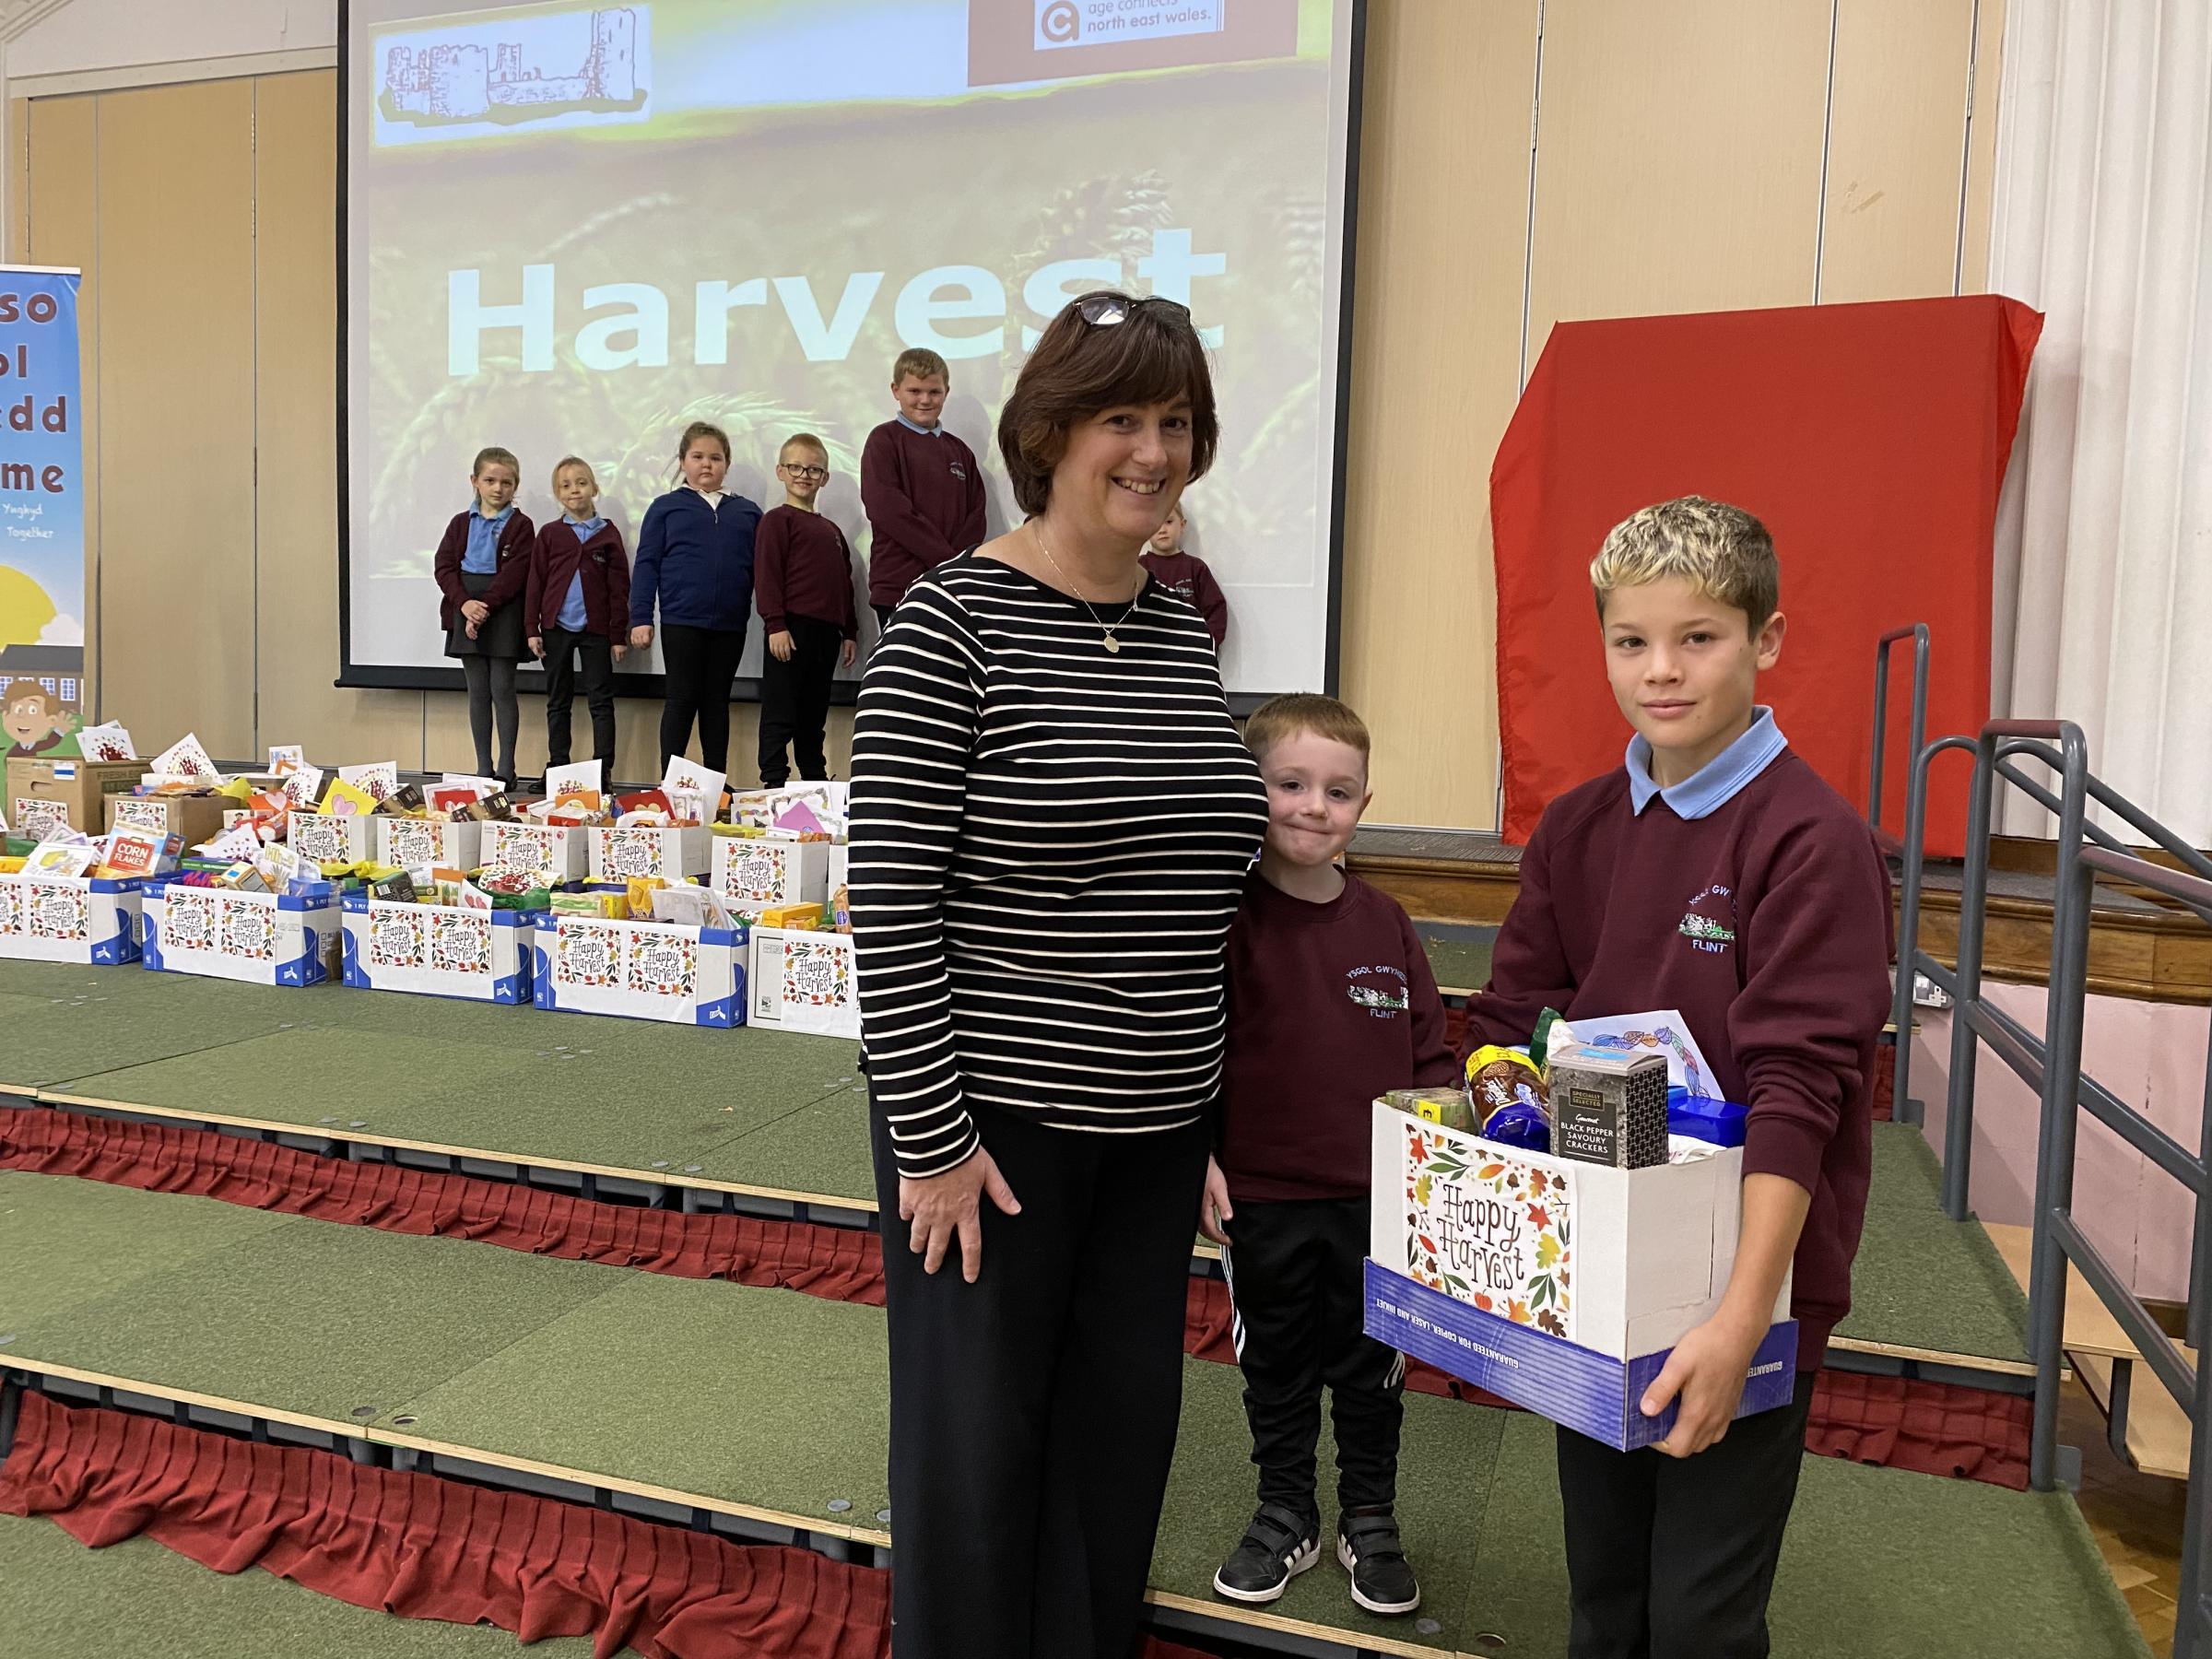 Food hampers were created by pupils at Ysgol Gwynedd, Flint, for the elderly in the community.